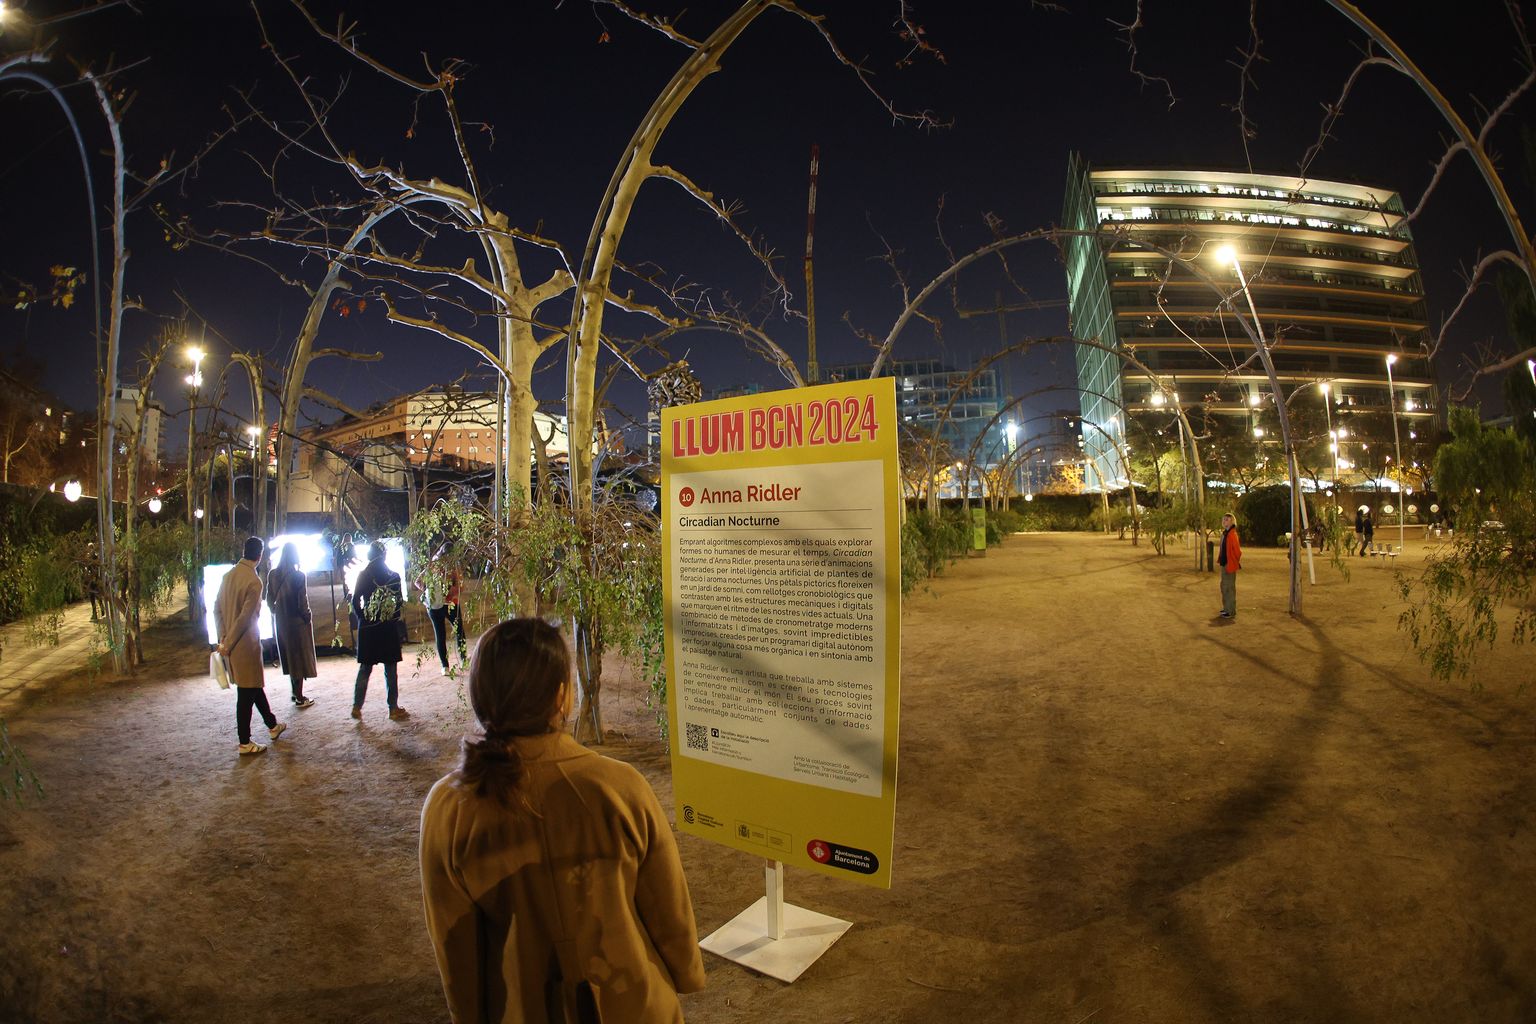 Persones passegen pel parc del Centre del Poblenou. Una dona mira el cartell del Llum BCN 2024. “Circadian Nocturne”, obra per Anna Ridler. Al Parc del Centre del Poblenou (Espai Voltes) - av. Diagonal, 130